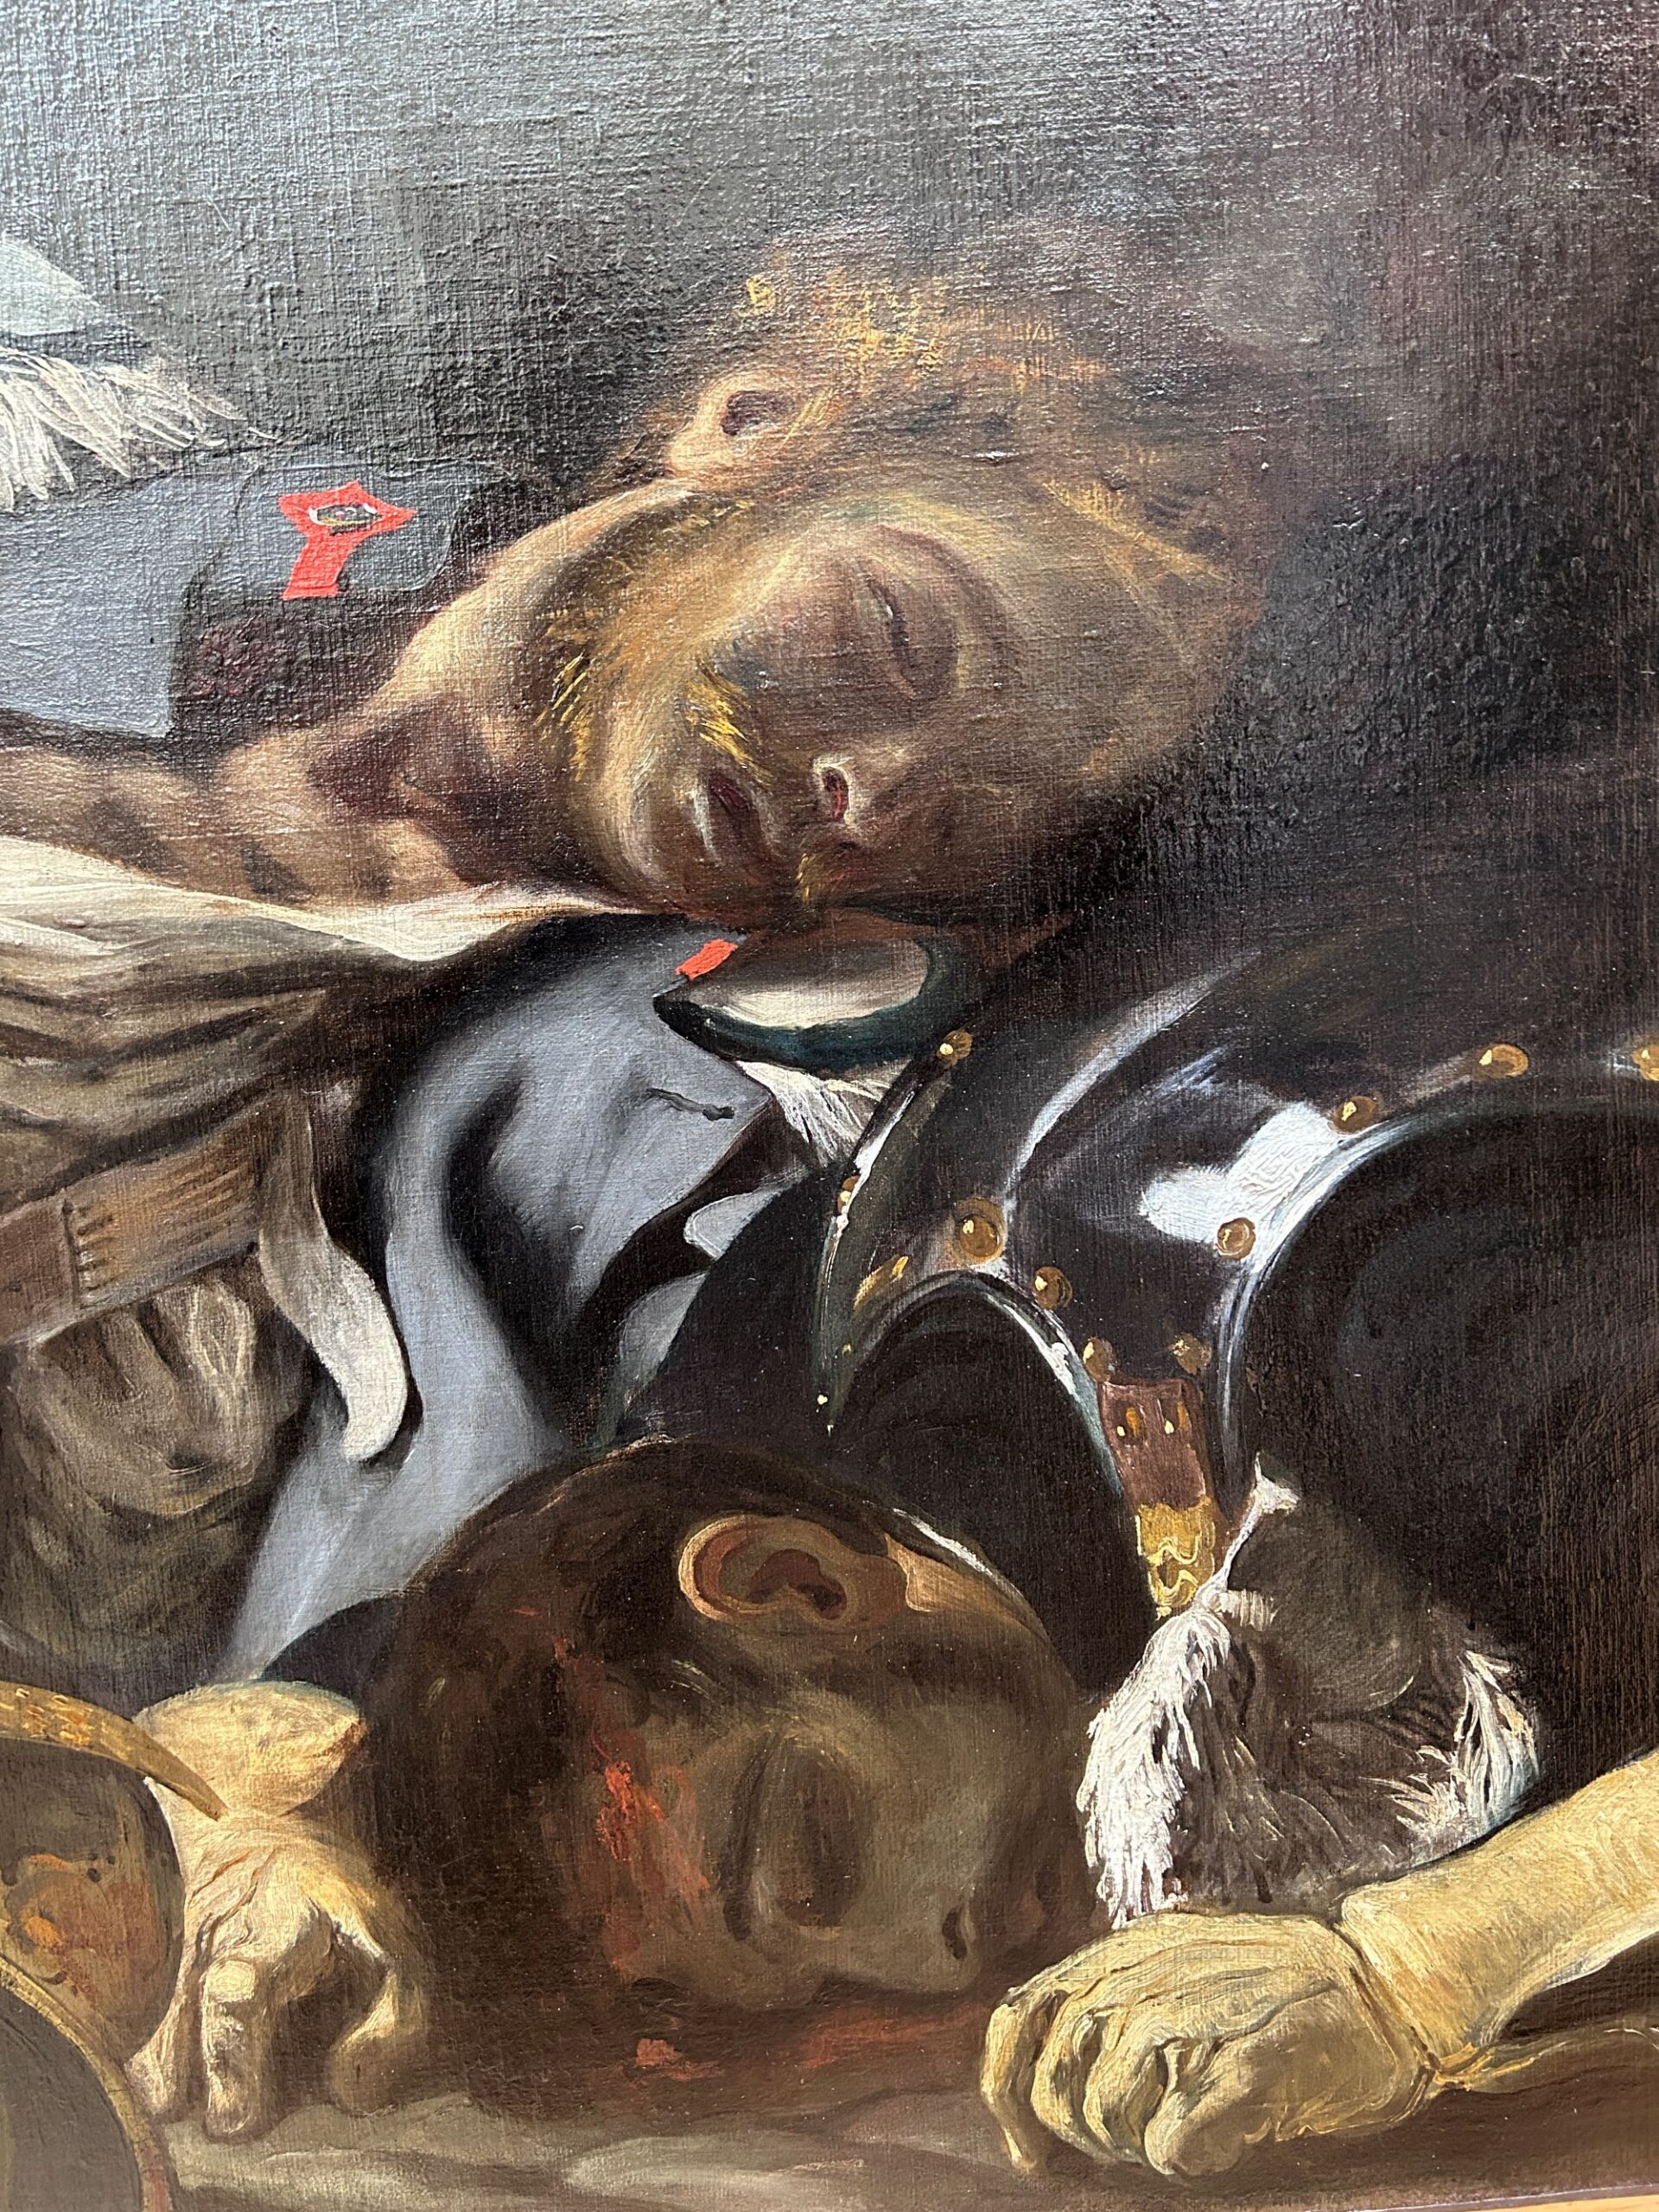 Eugène Delacroix (1798-1863), La Liberté guidant le peuple (détails après restauration), 1830. Huile sur toile, 260 x 325 cm. Paris, département des Peintures du musée du Louvre. © OPM